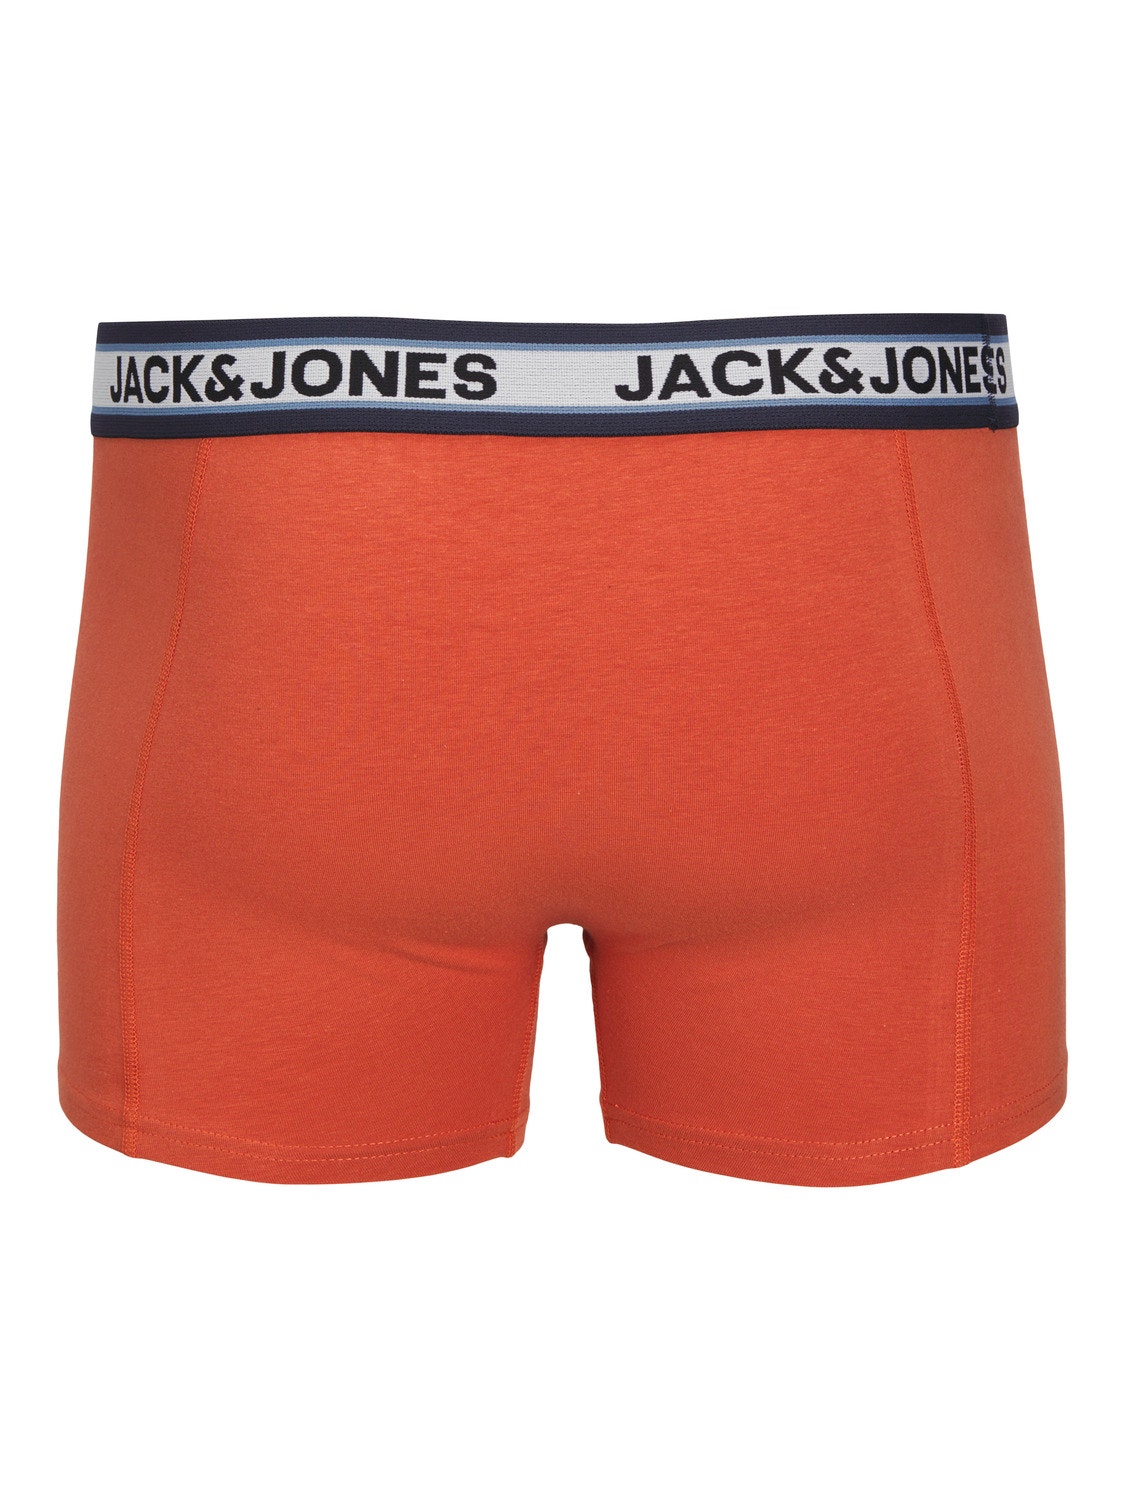 Jack & Jones 3-pack Trunks -Coronet Blue - 12250605